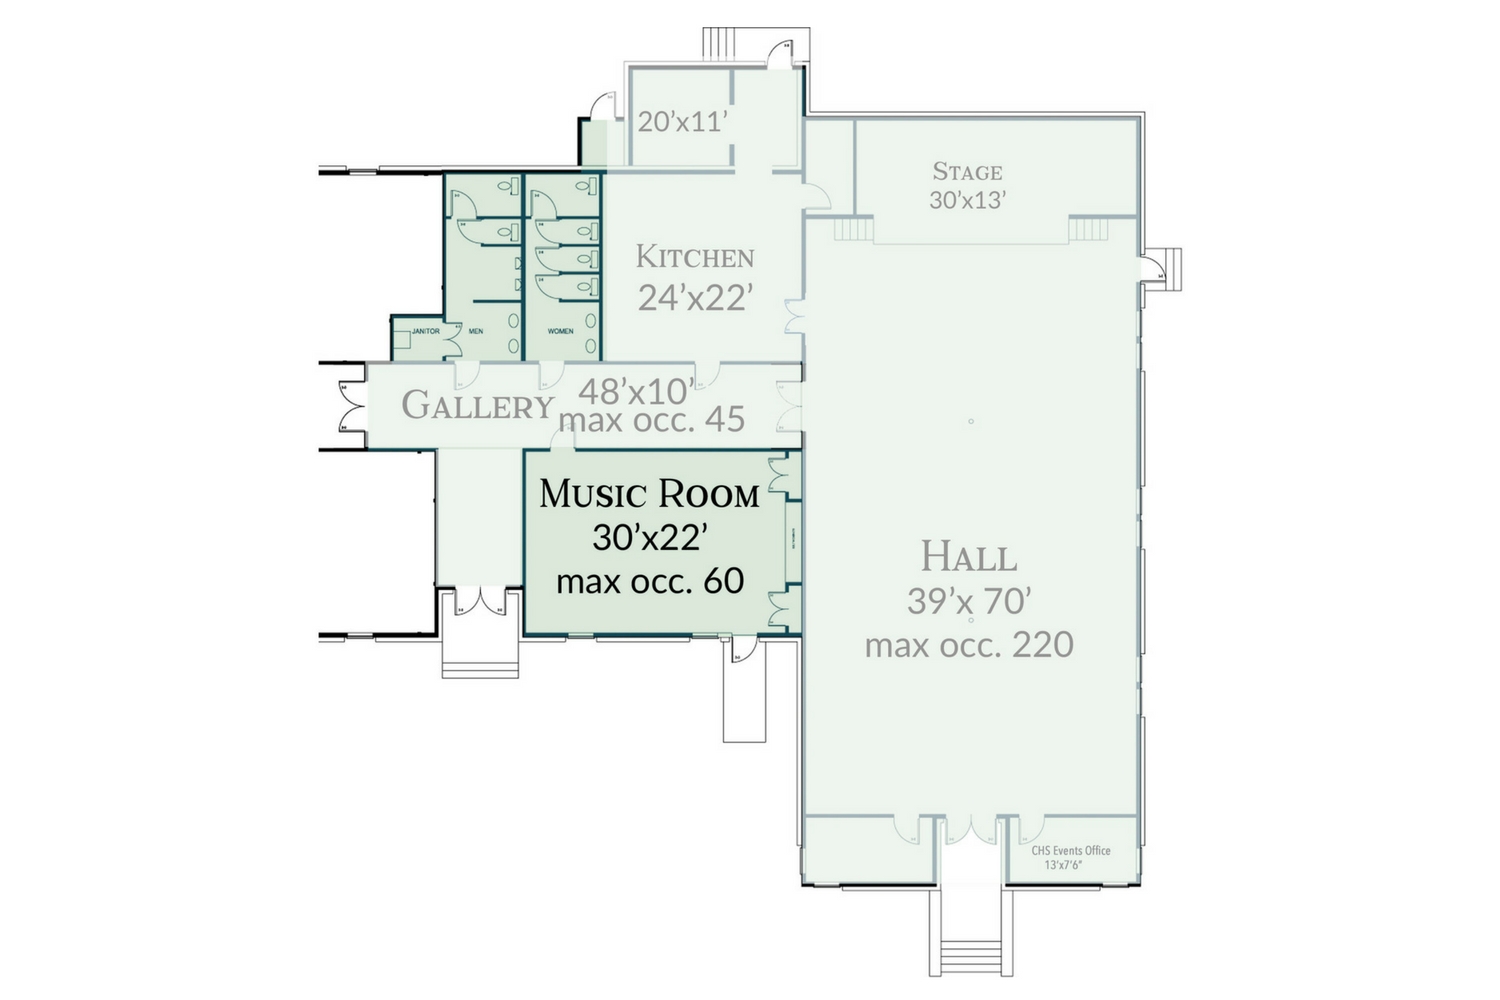 The Schoolhouse Music Room Floorplan